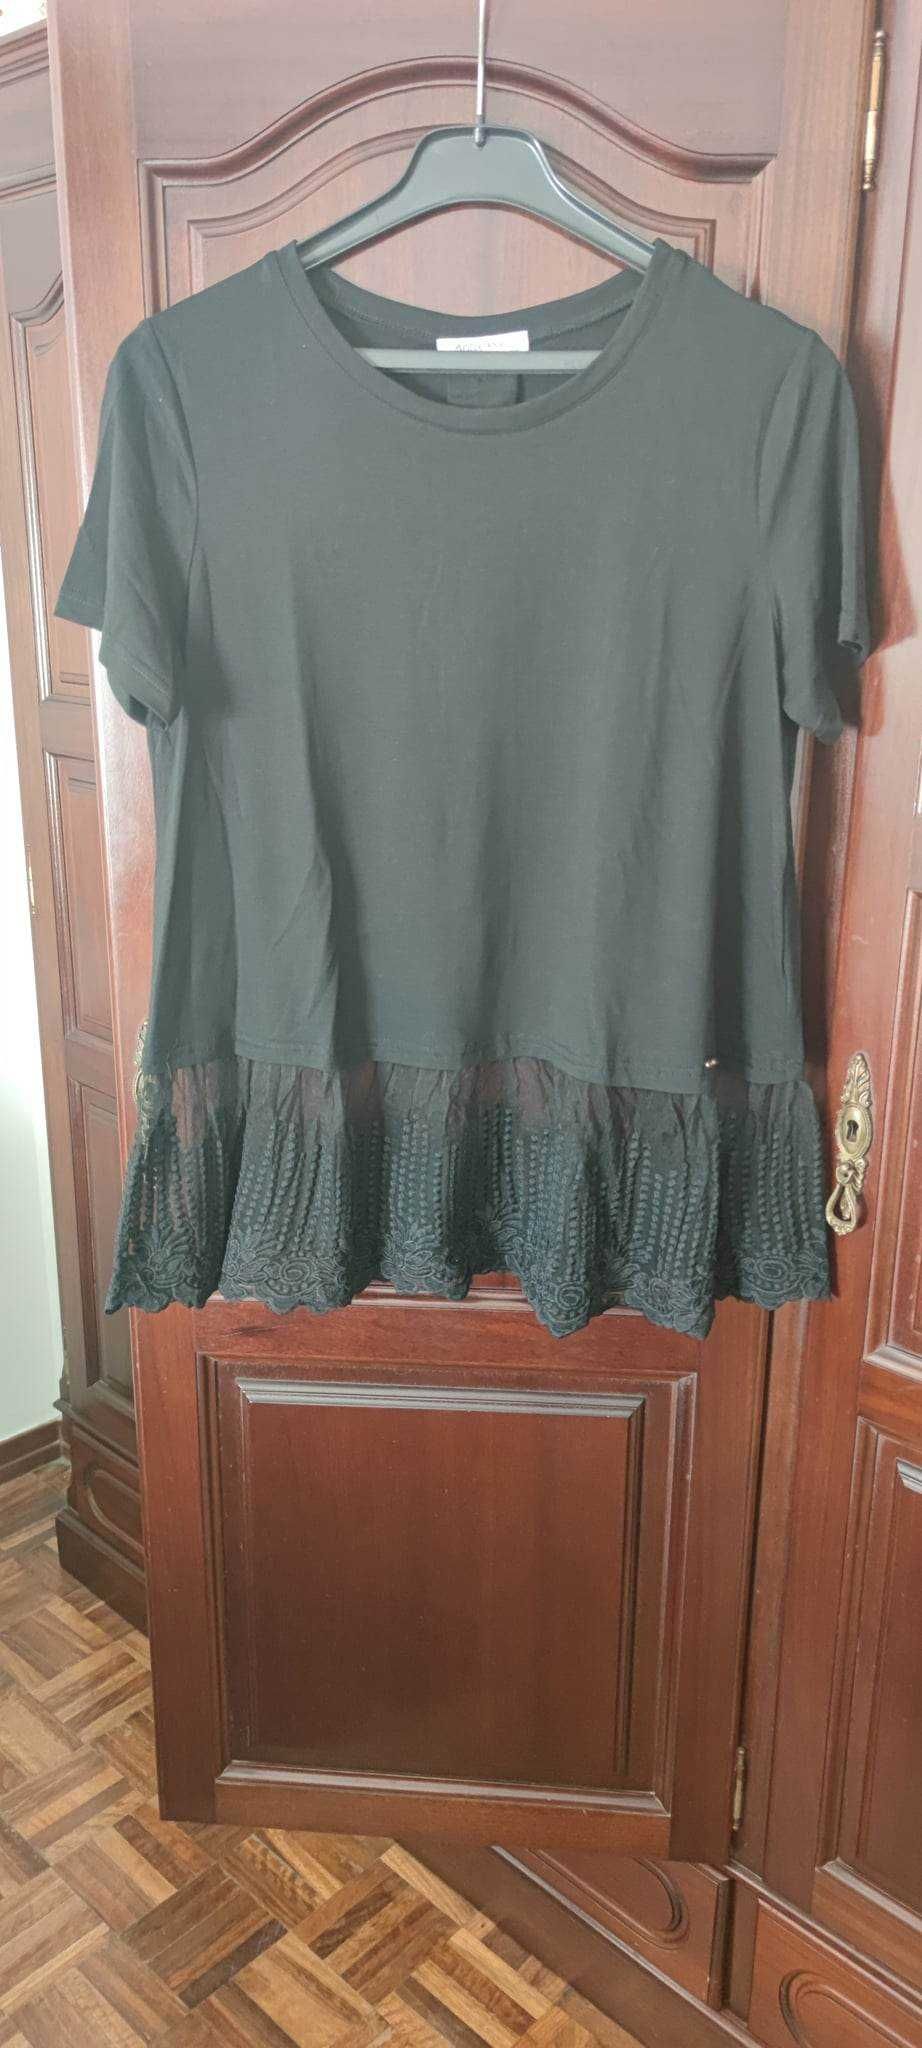 T-shirt Preta (Moda Ana) veste até XL (nova) 10€